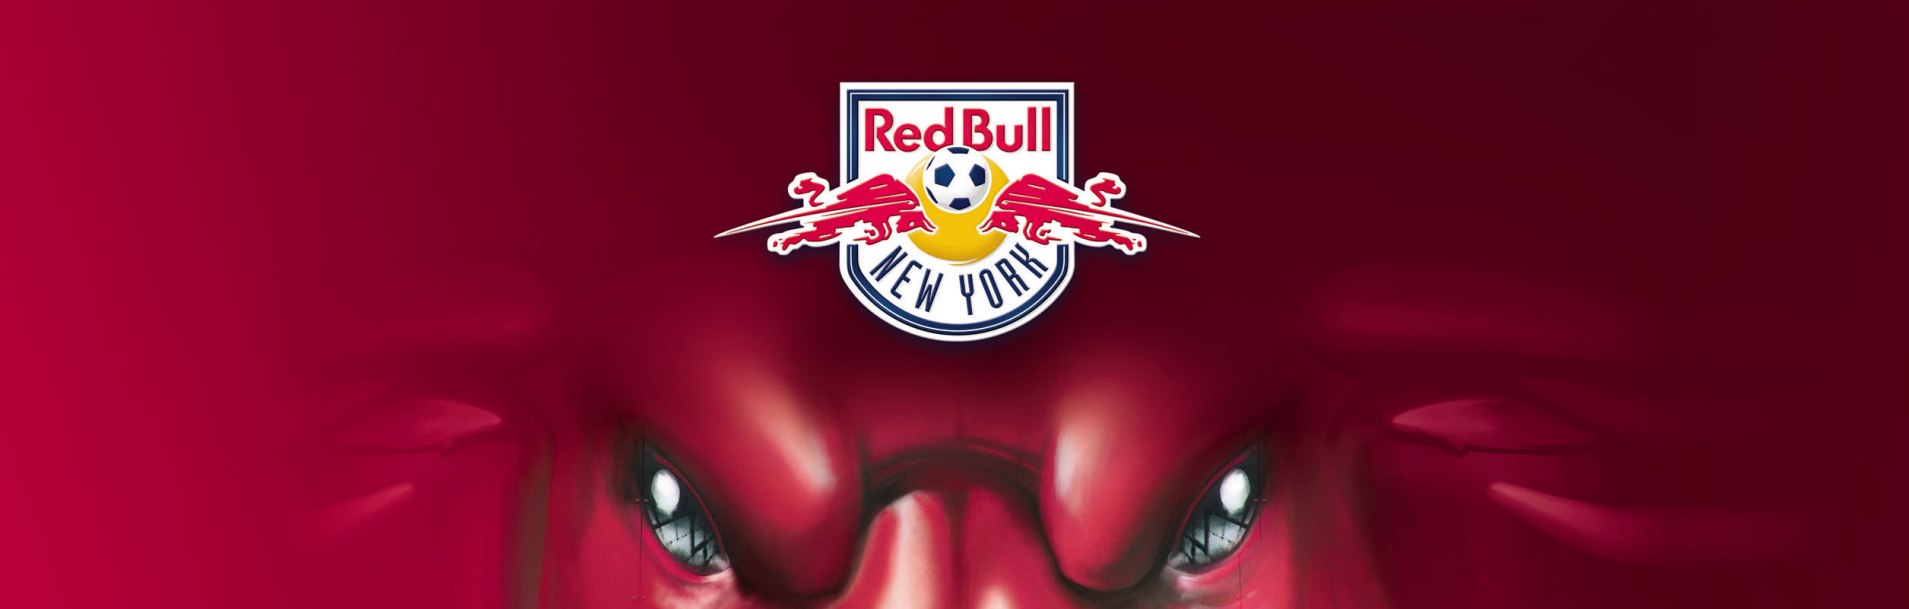 Red Bulls Inician Temporada La Pasion Por El Futbol